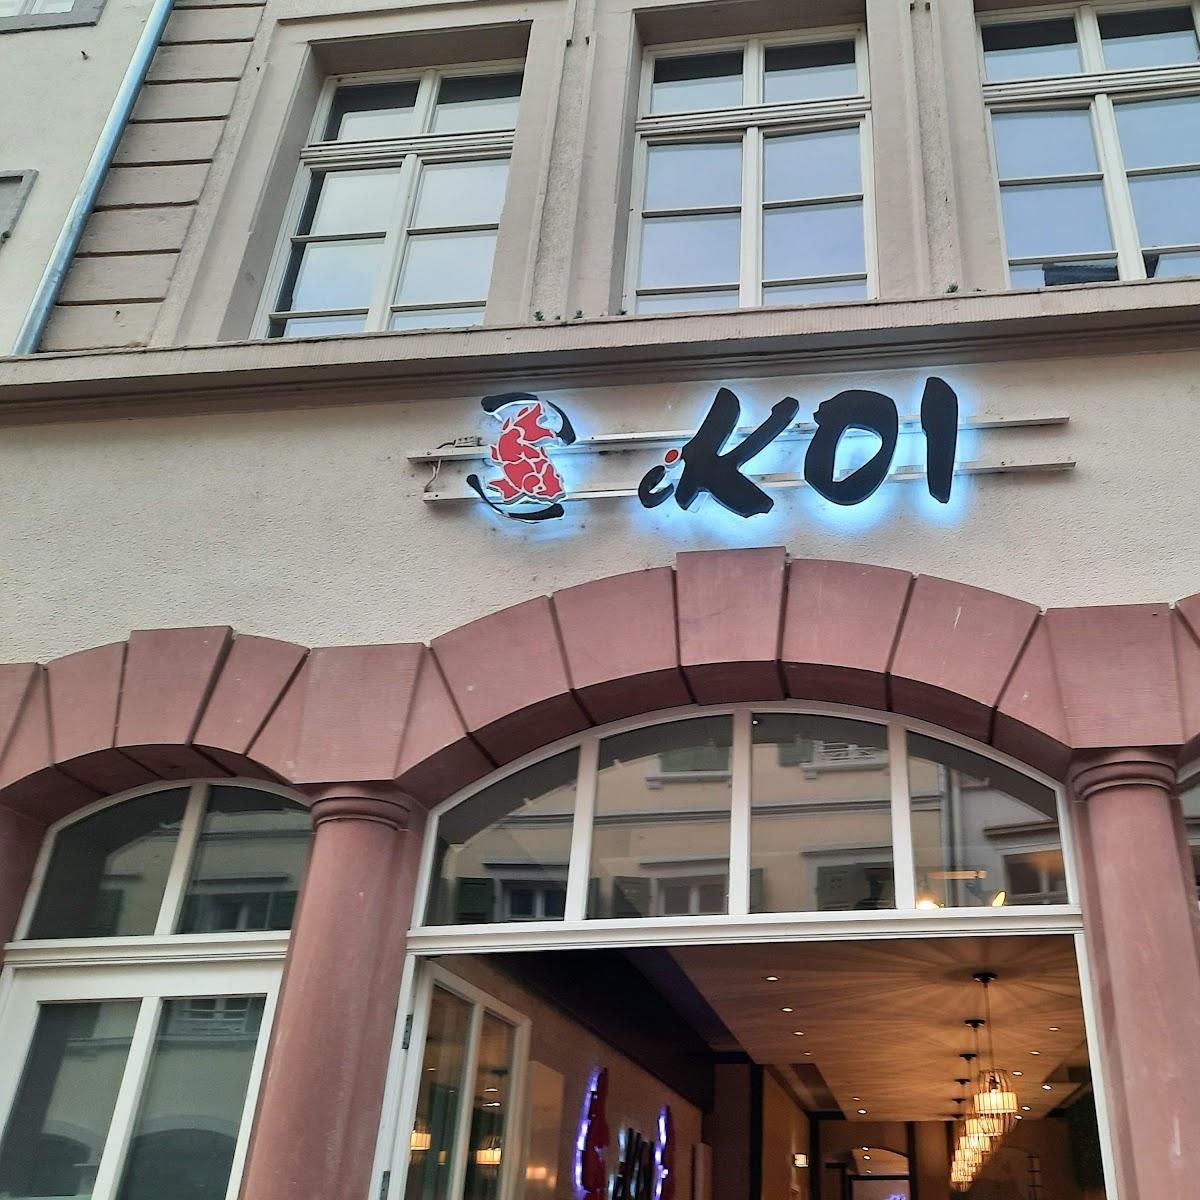 Restaurant "I Koi Sushi Restaurant" in Heidelberg